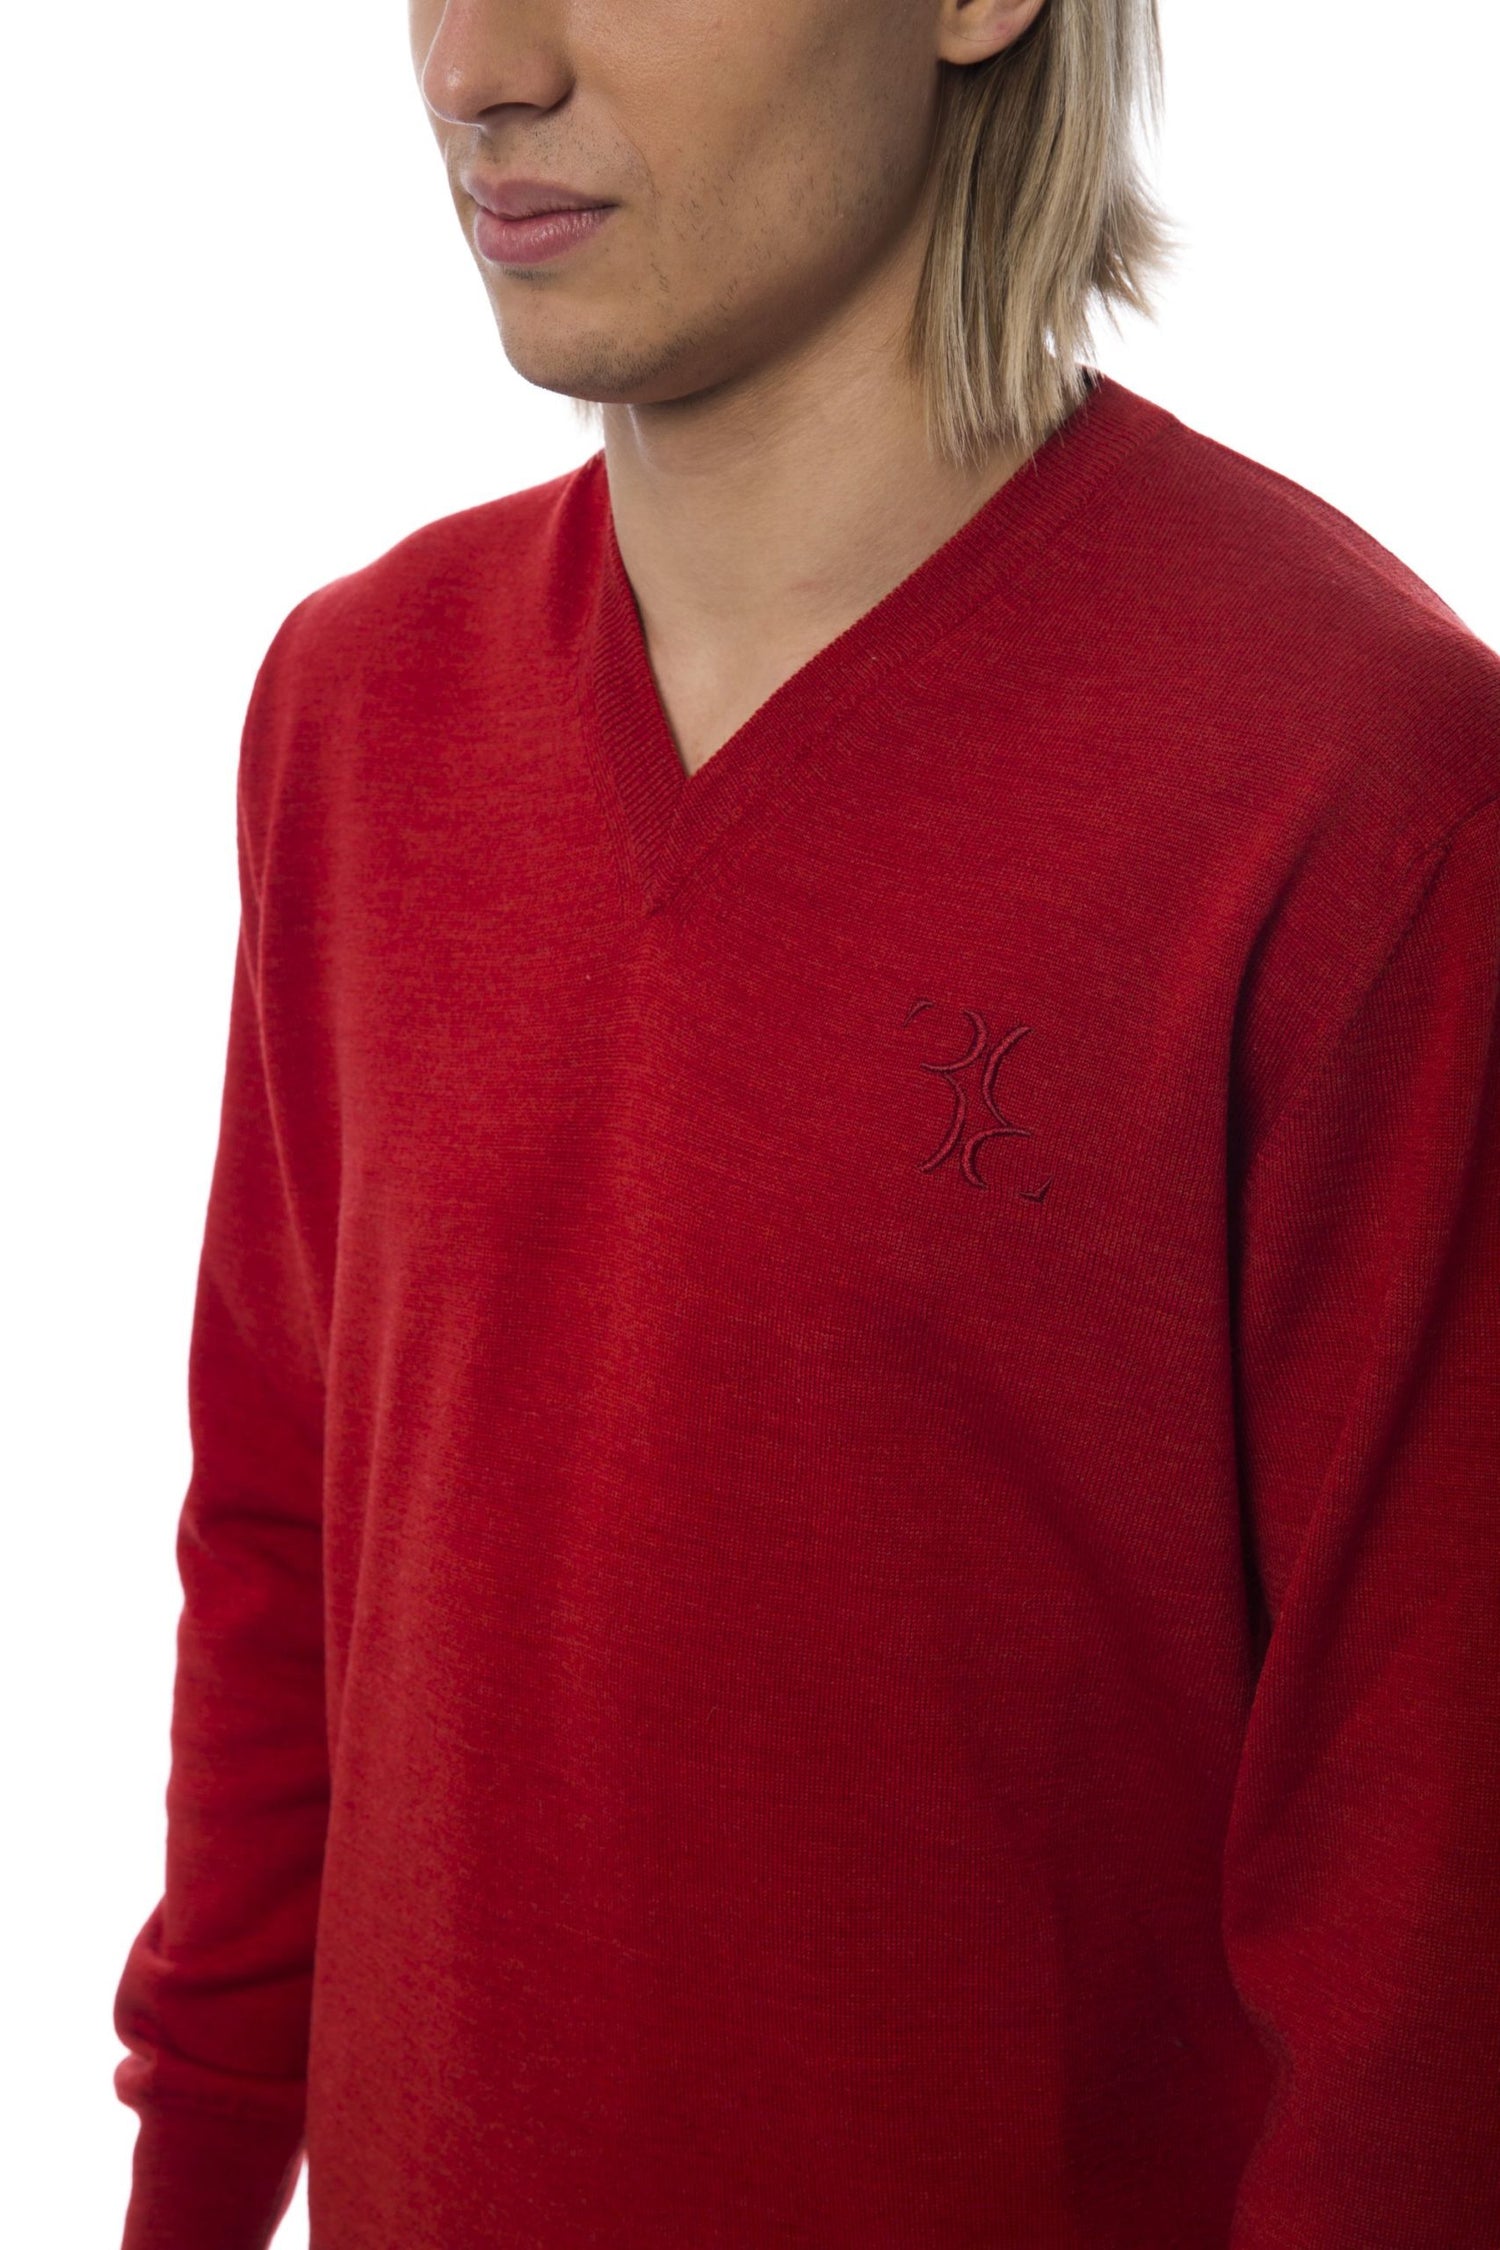 Red Merino Wool Sweater